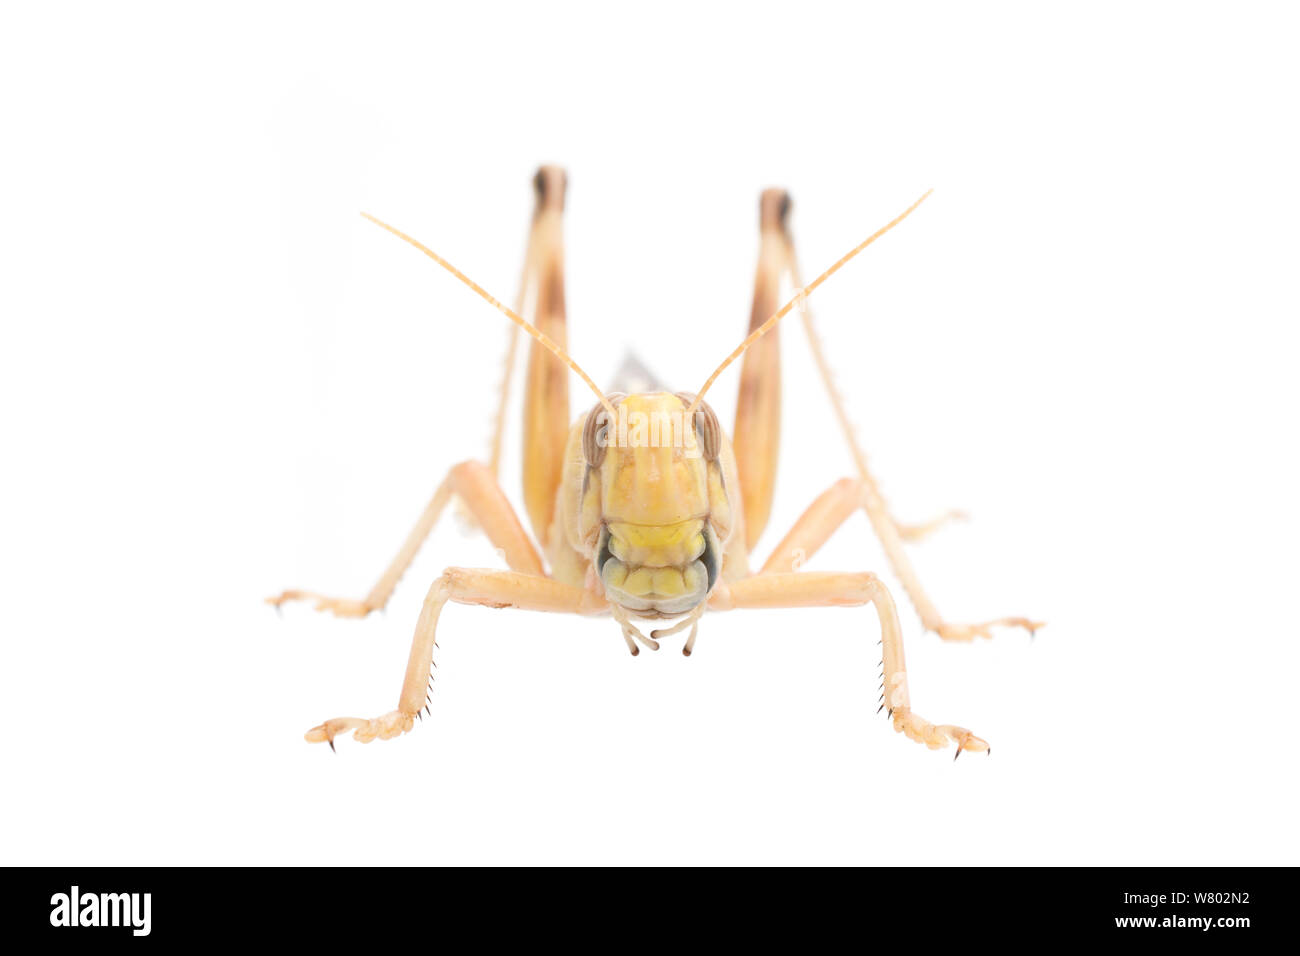 Desert locust (Schistocerca gregaria) männlich. Captive, tritt in Afrika und Asien, Meetyourneighbors.net Projekt Stockfoto